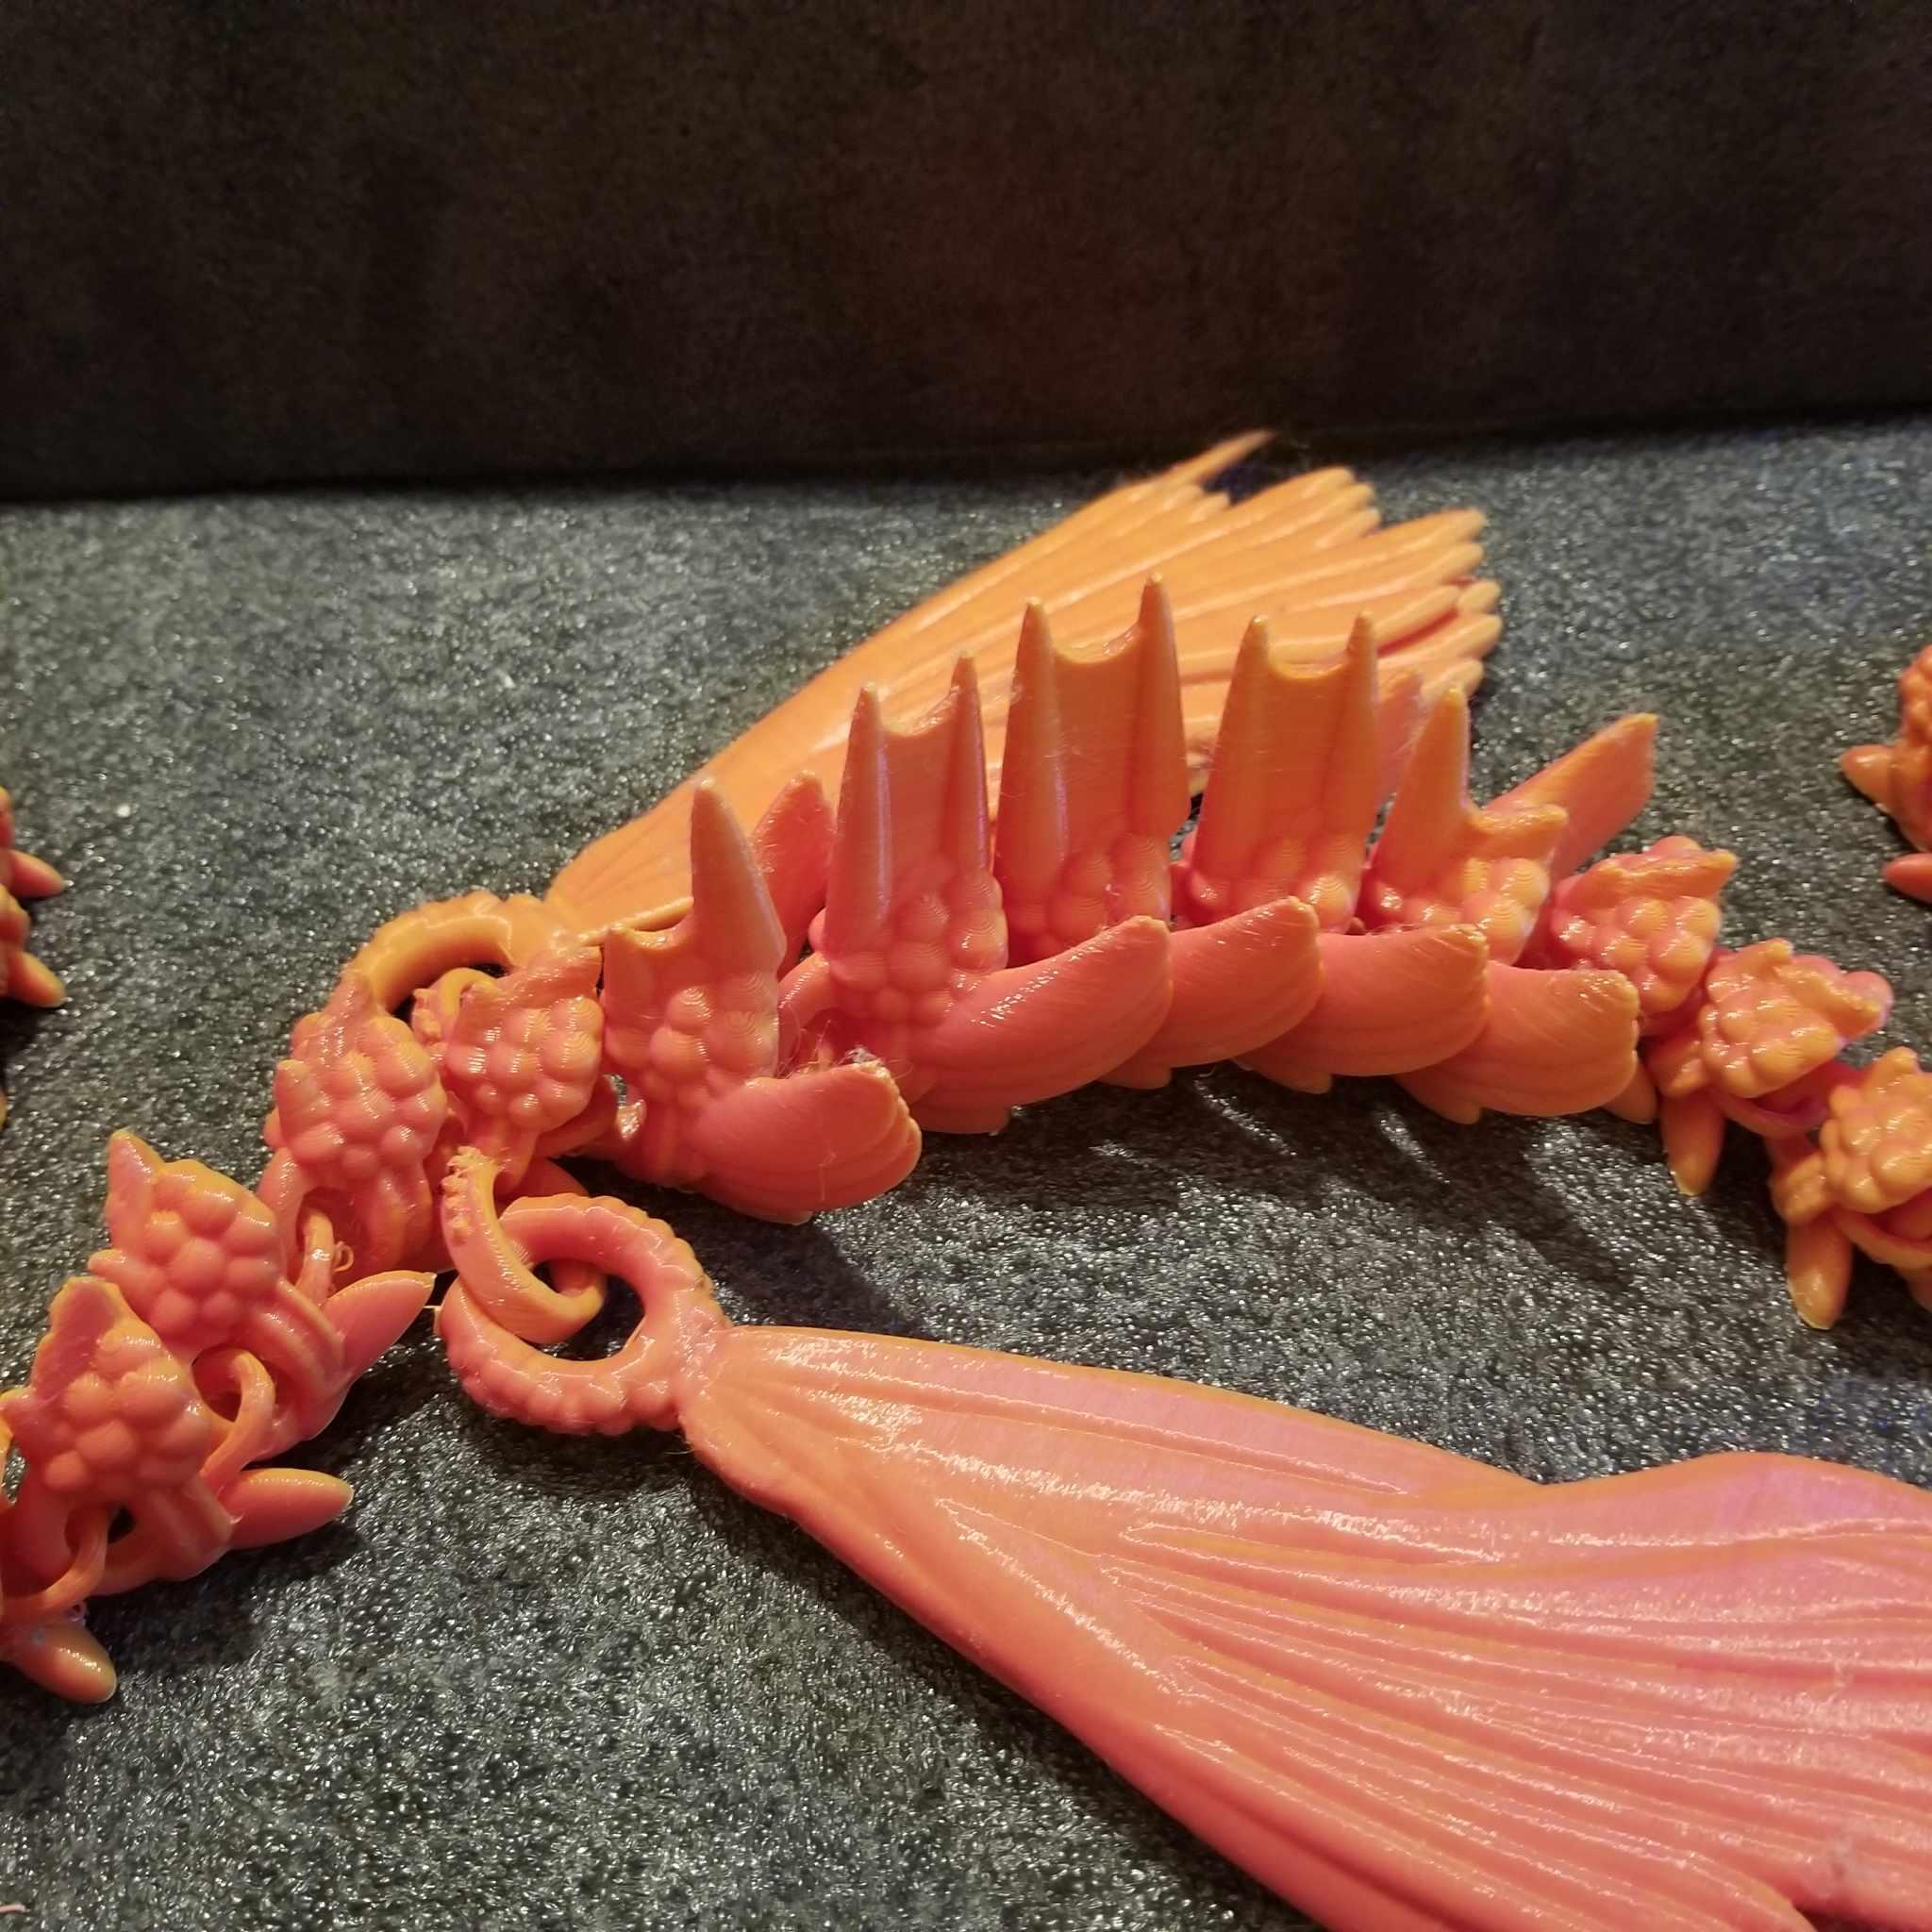 Shakaworld3d aqua deep sea dragon 256x256 Release  v1 .stl 3d model